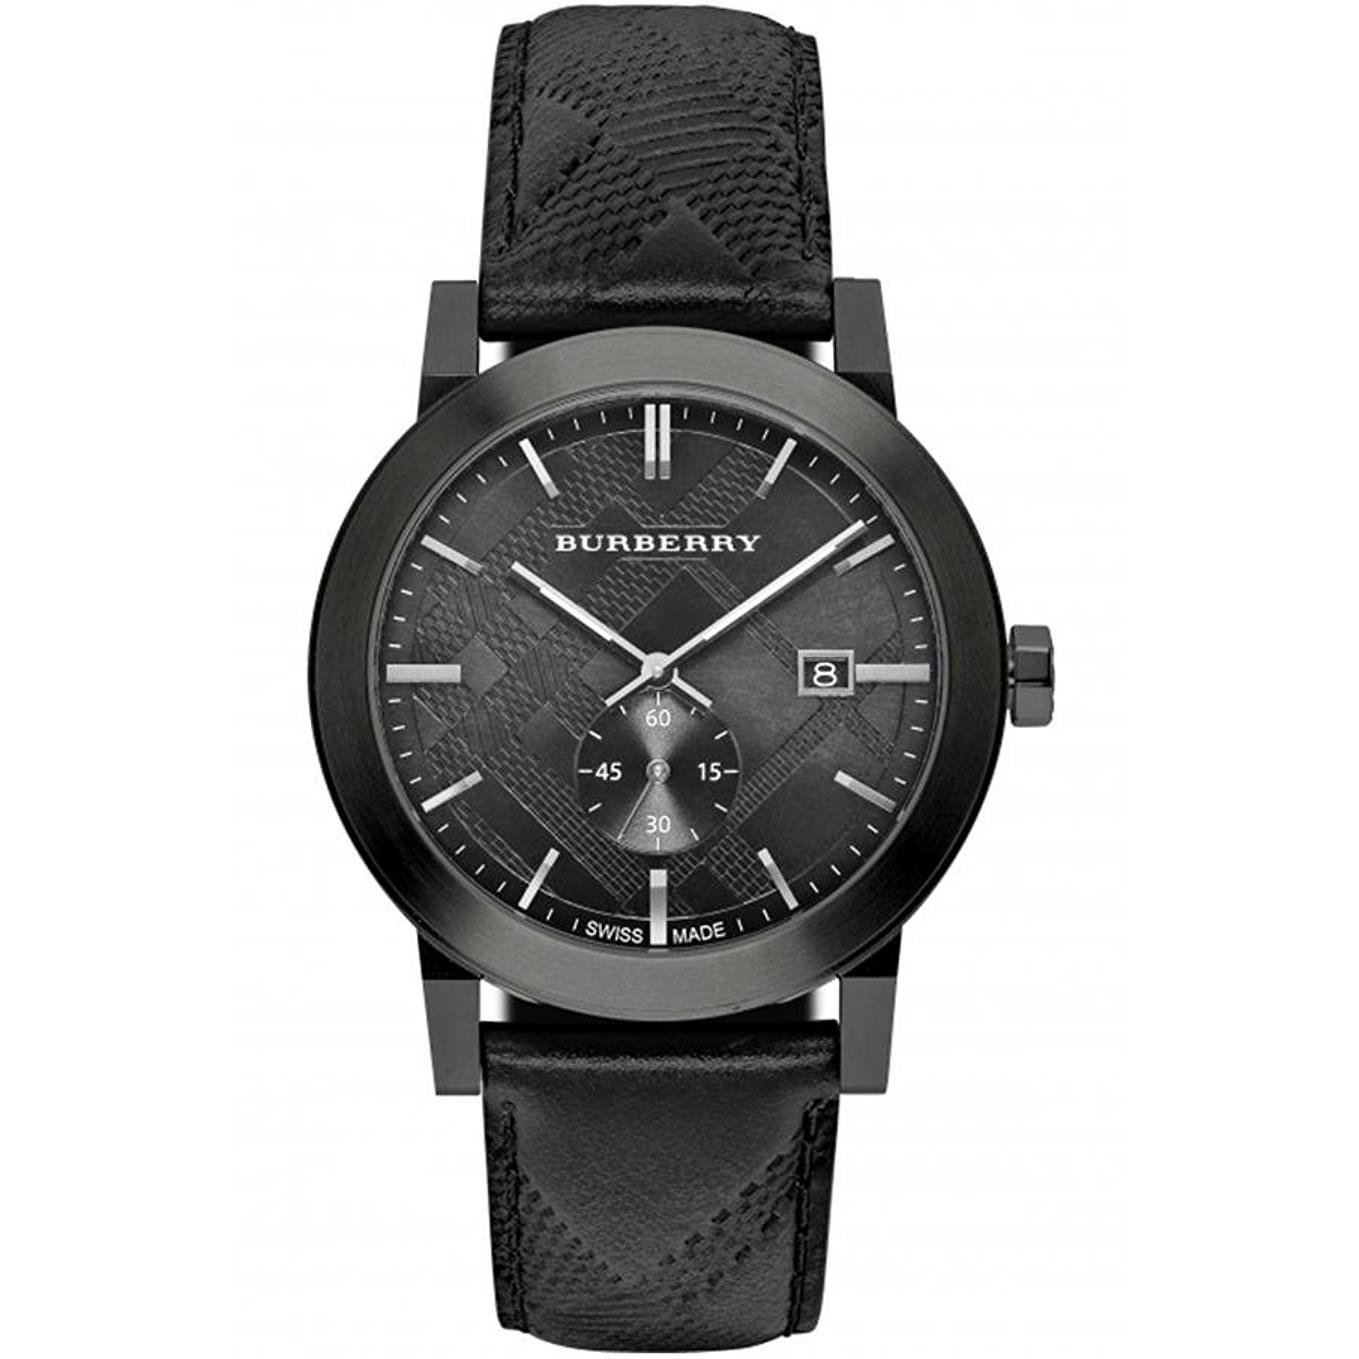 Actualizar 89+ imagen burberry men’s leather watch